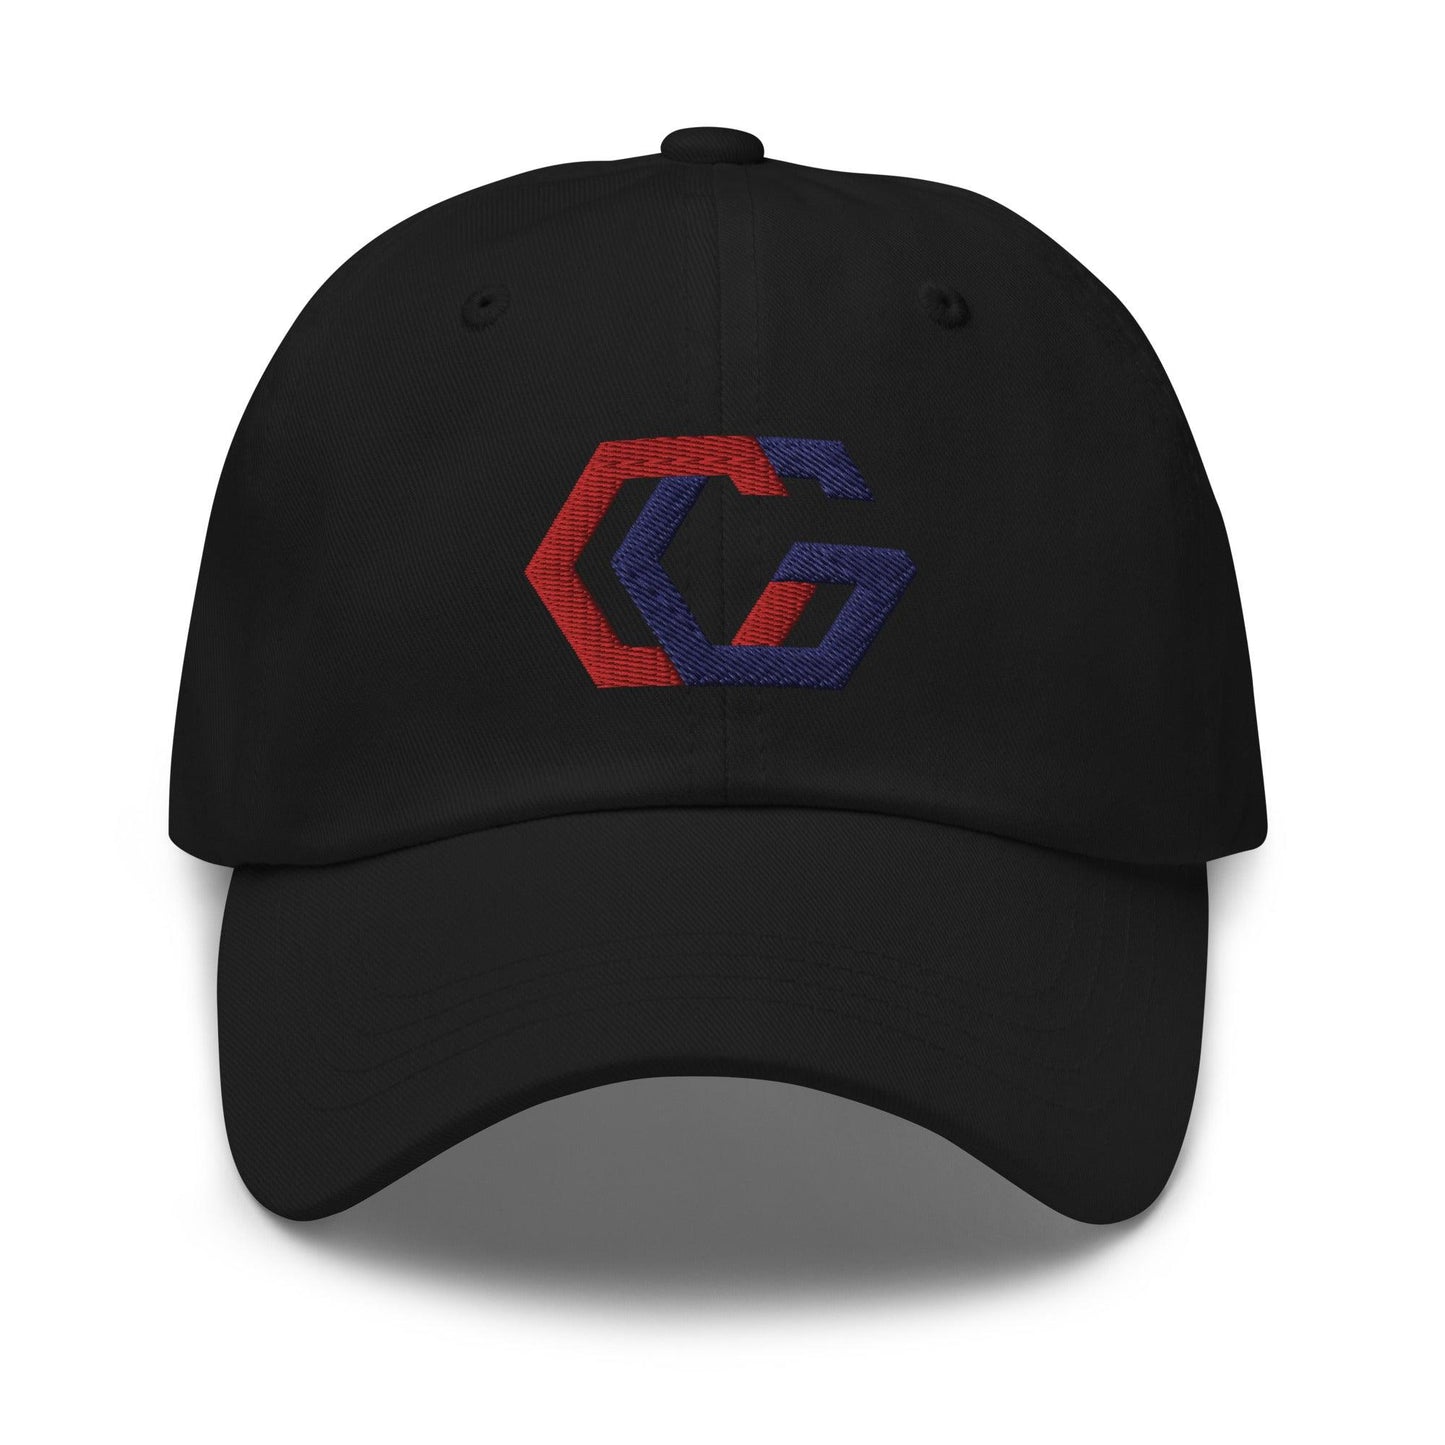 Chris Gerard “CG” hat - Fan Arch